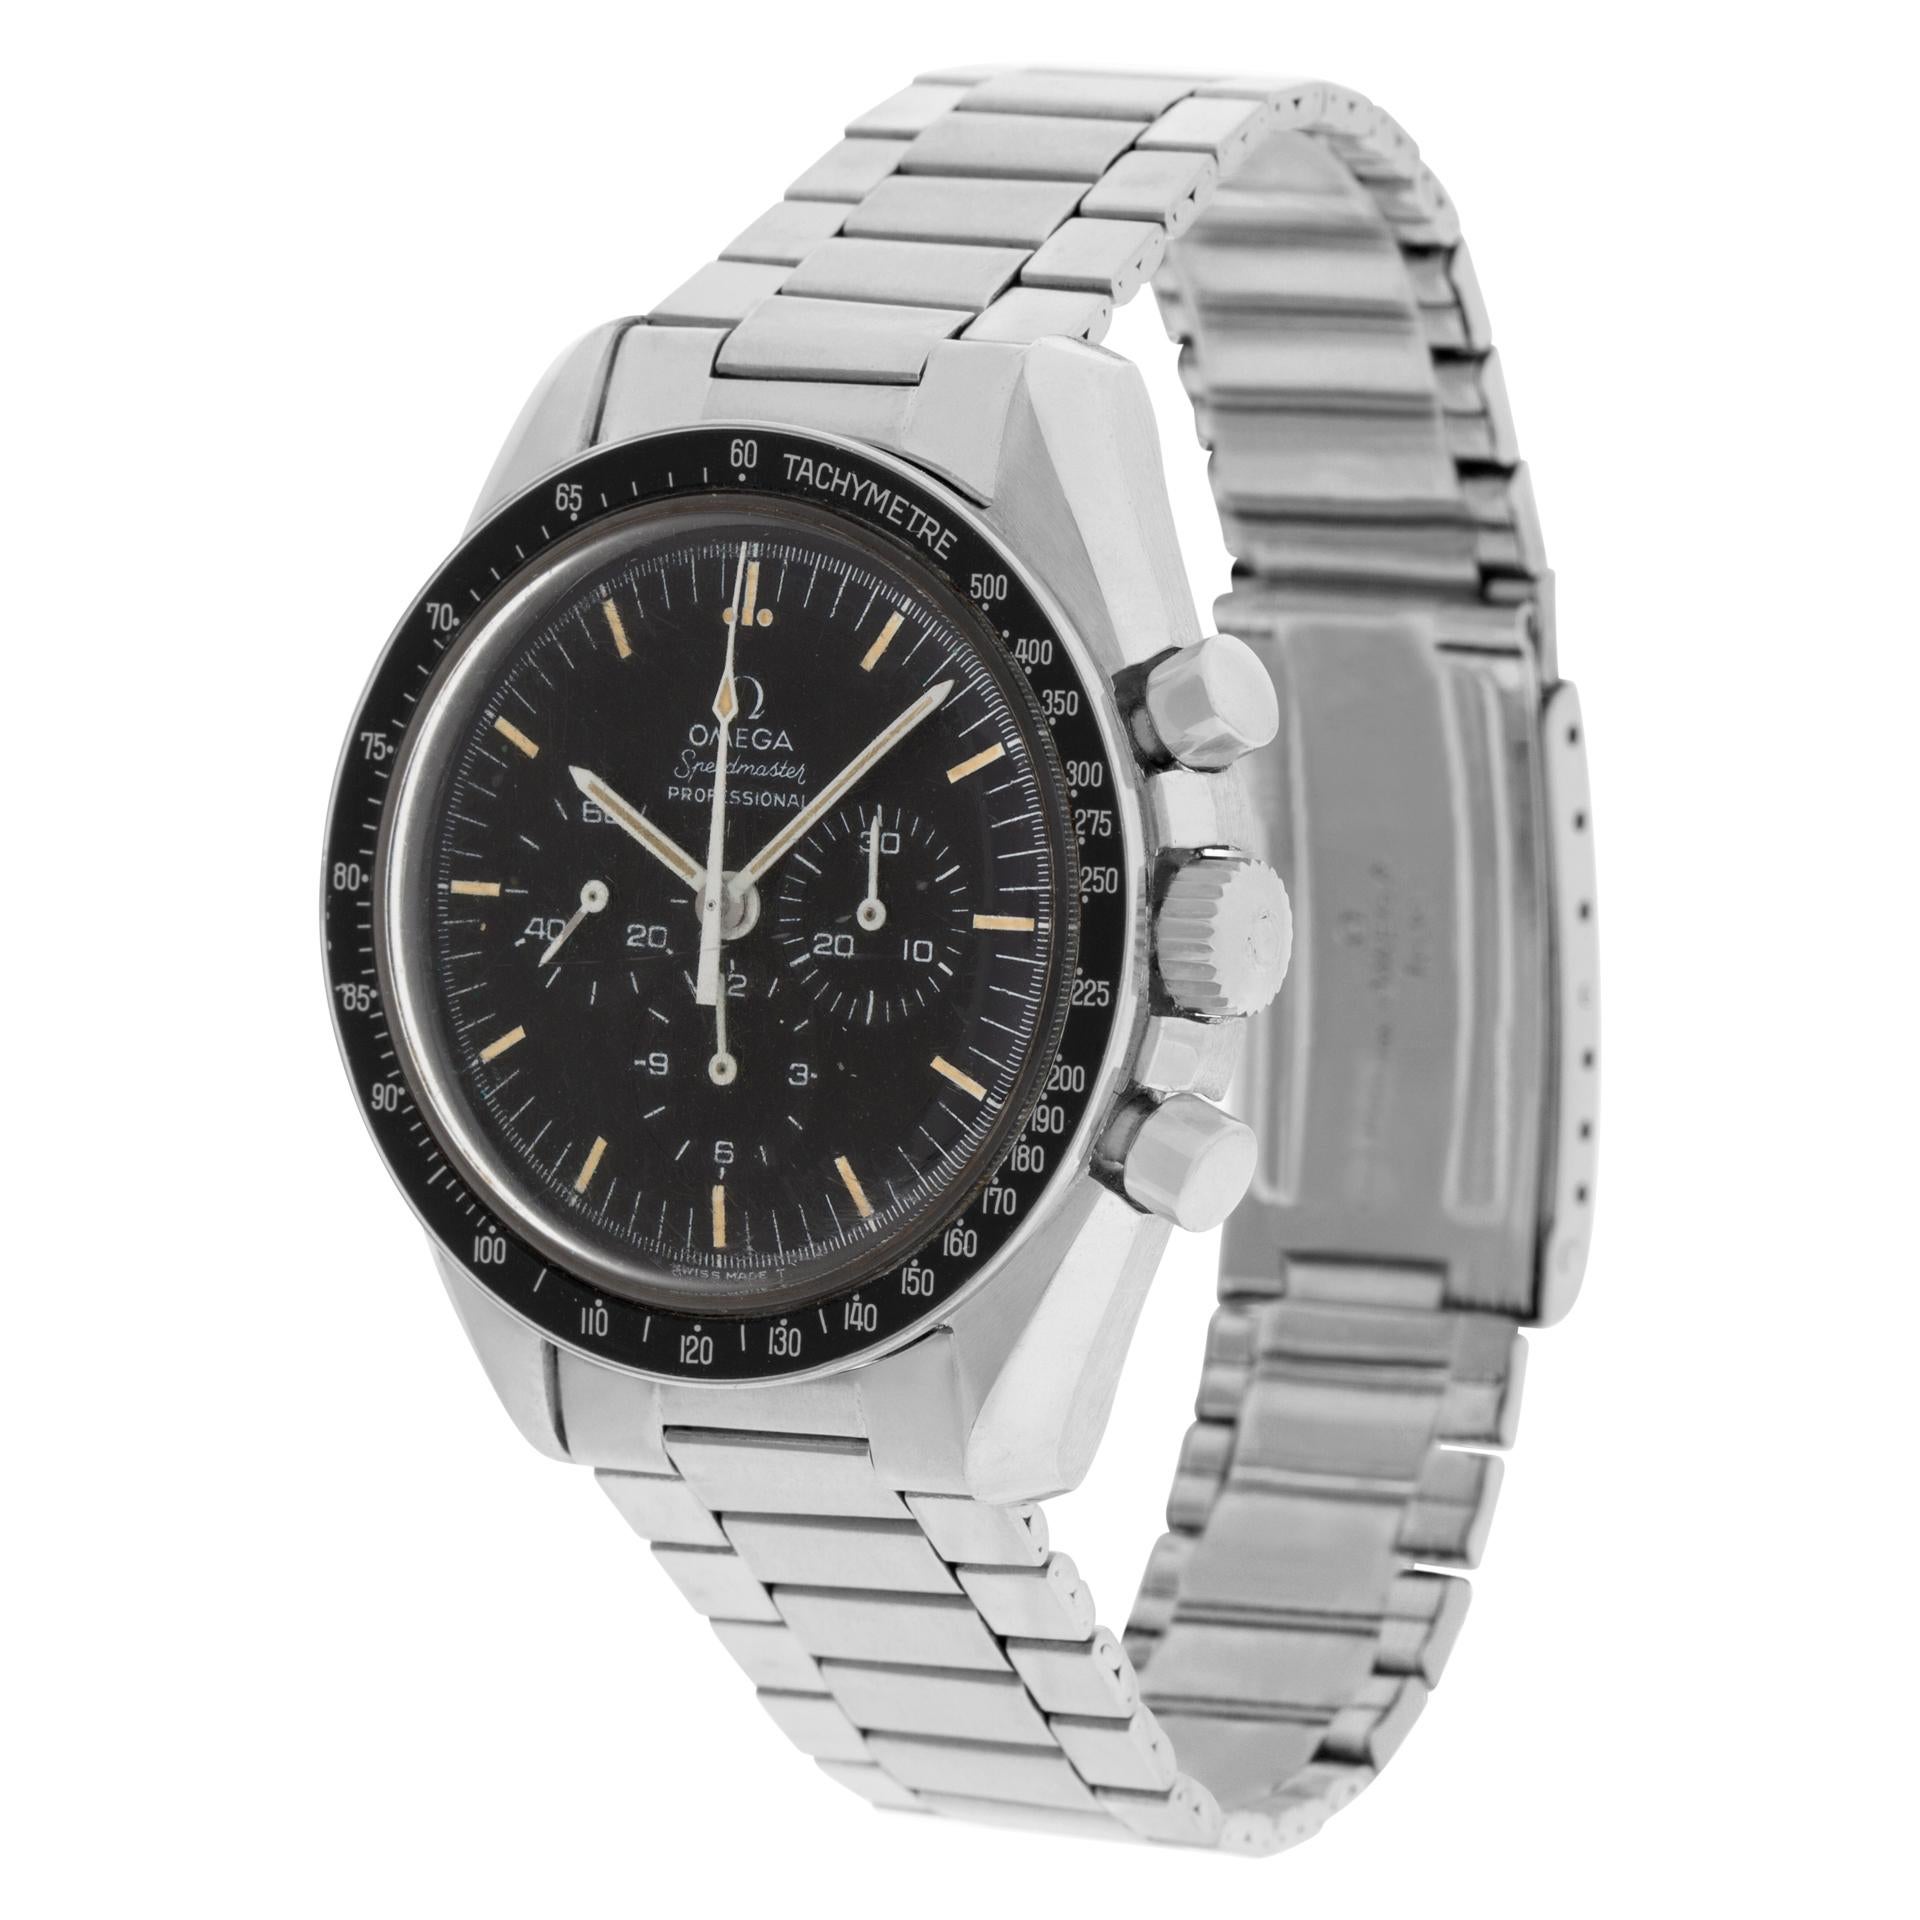 Vintage Omega Speedmaster Professional Moon Watch 